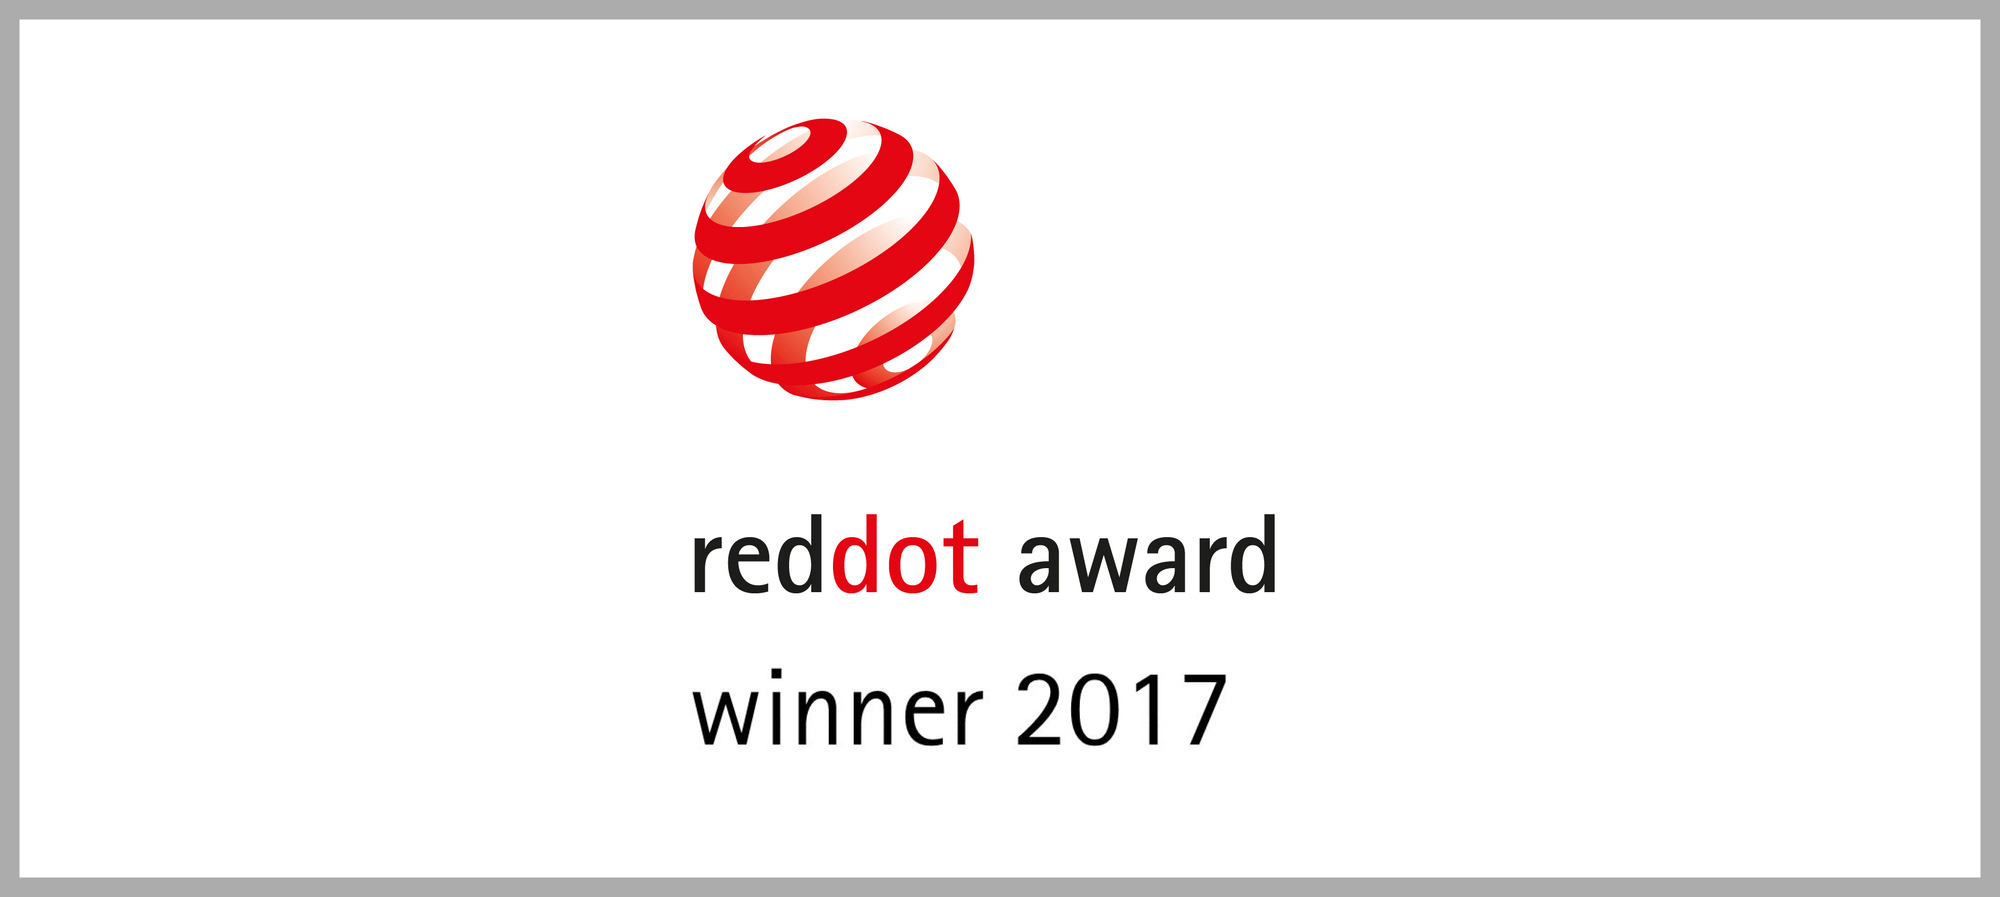 The Eye_Beacon wins a Red Dot Award for Urban / Public Design